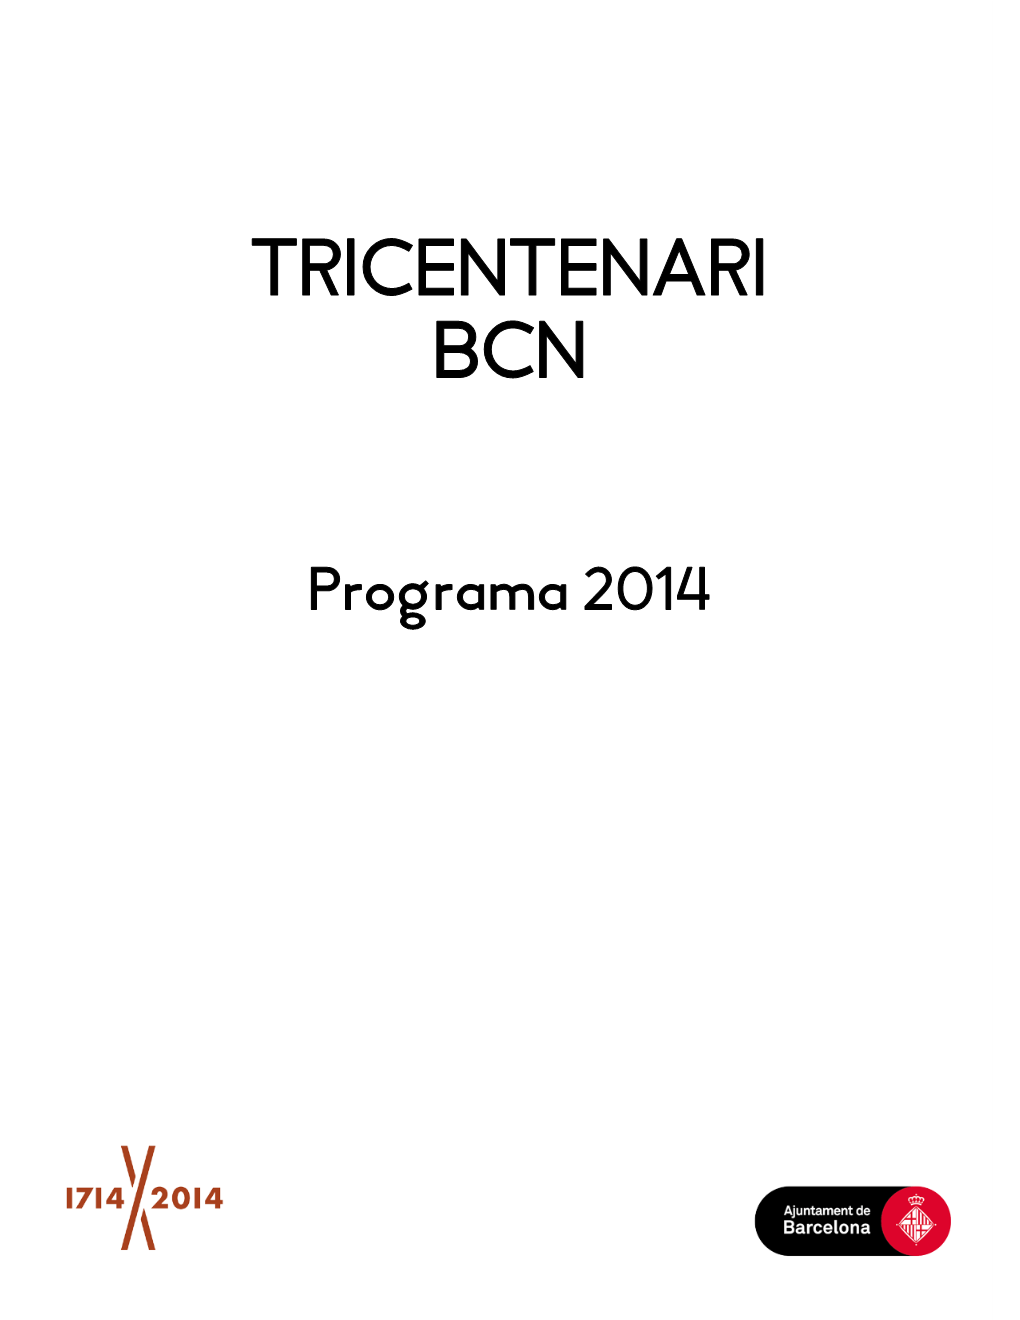 Tricentenari Bcn